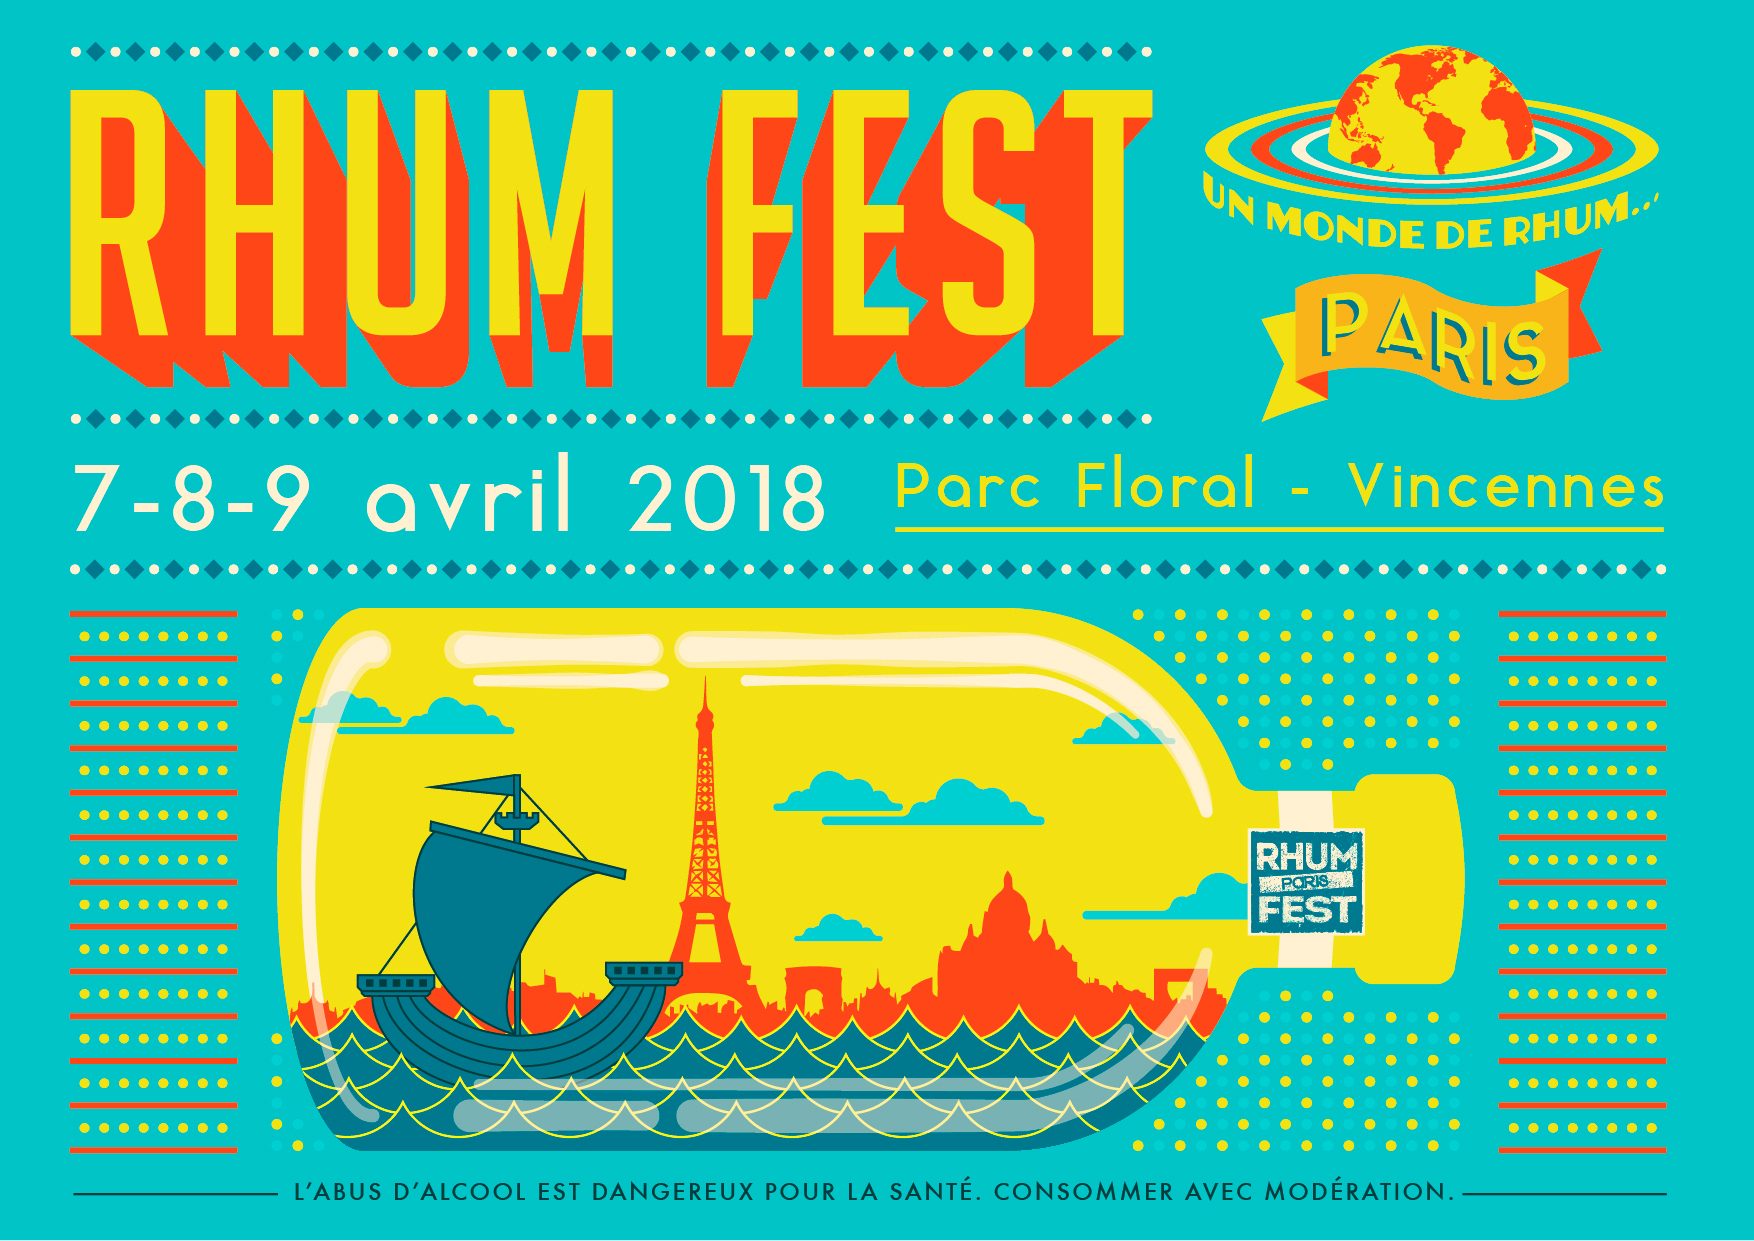 L'affiche du Rhum Fest Paris 2018